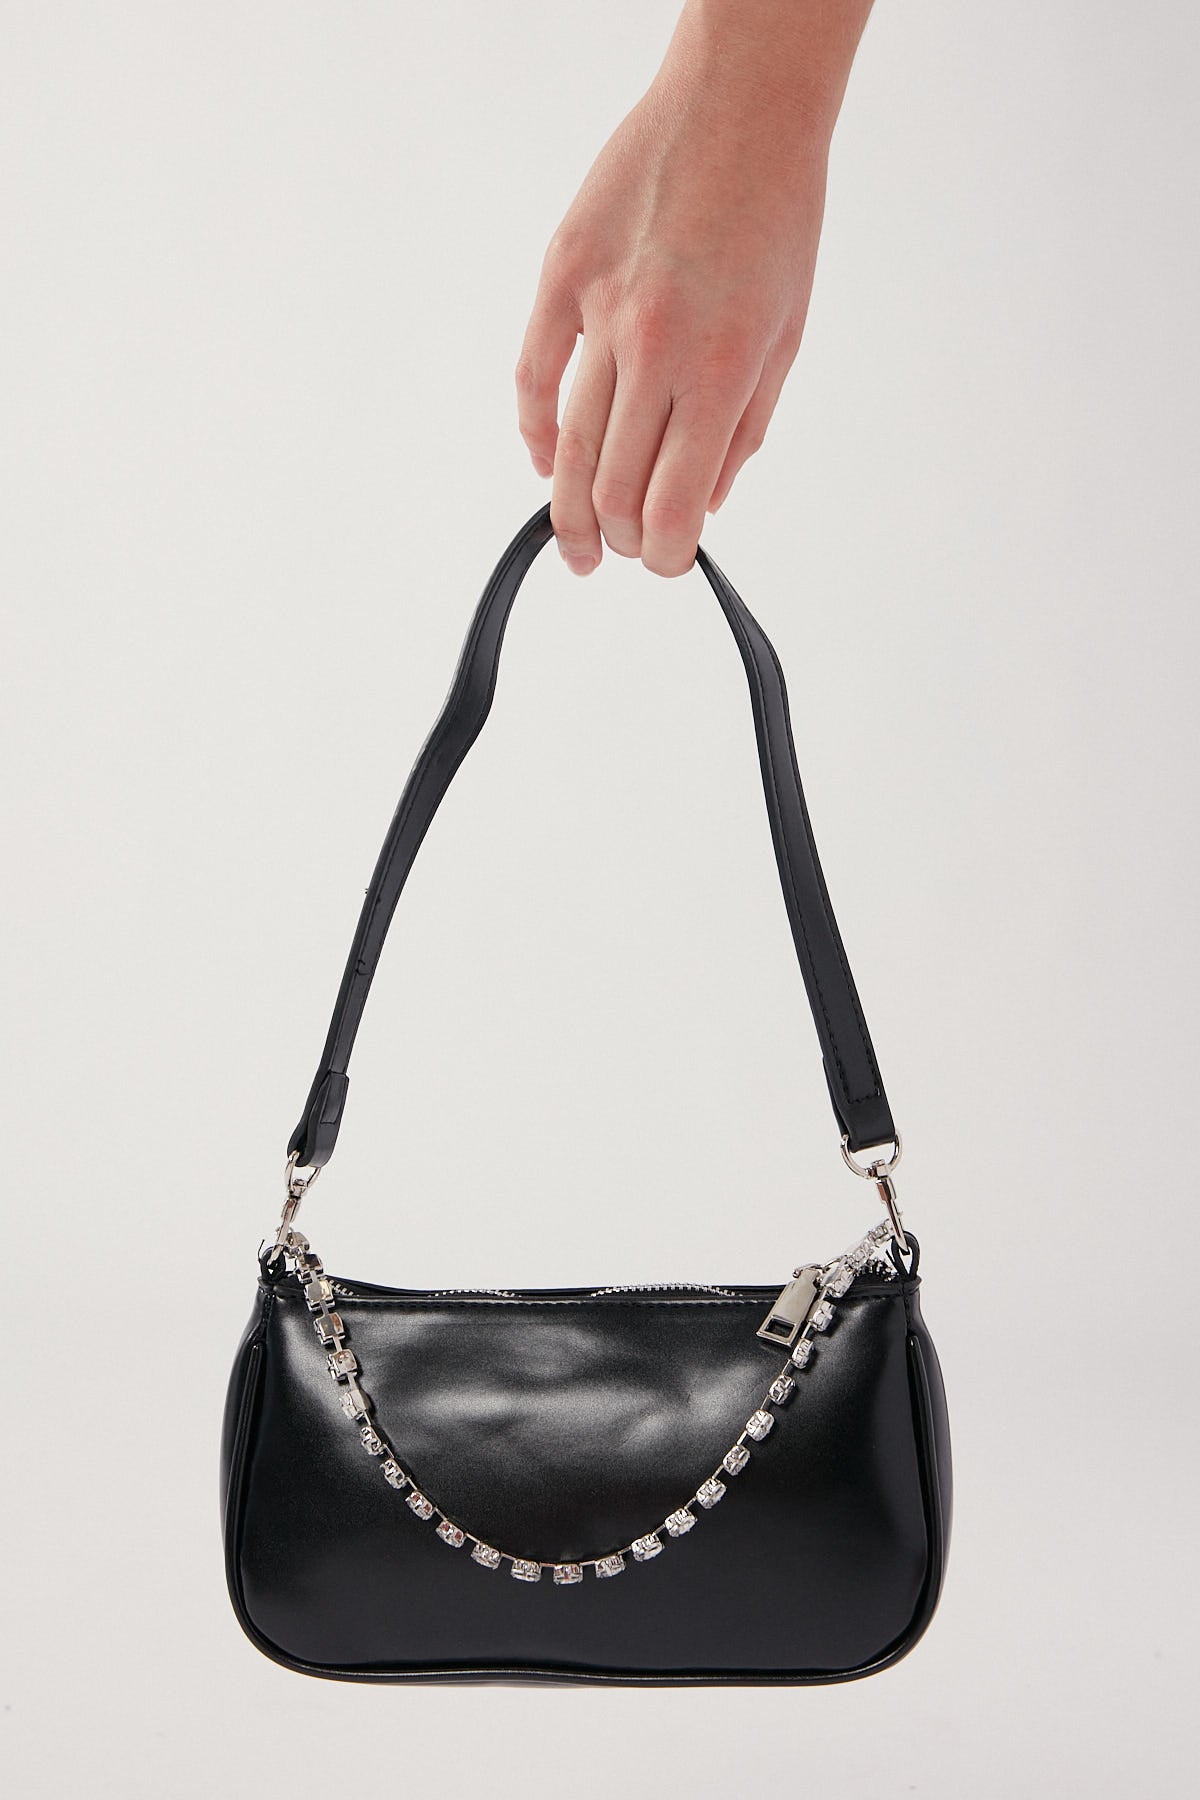 Perfect Stranger Iliana Diamante Handbag Black